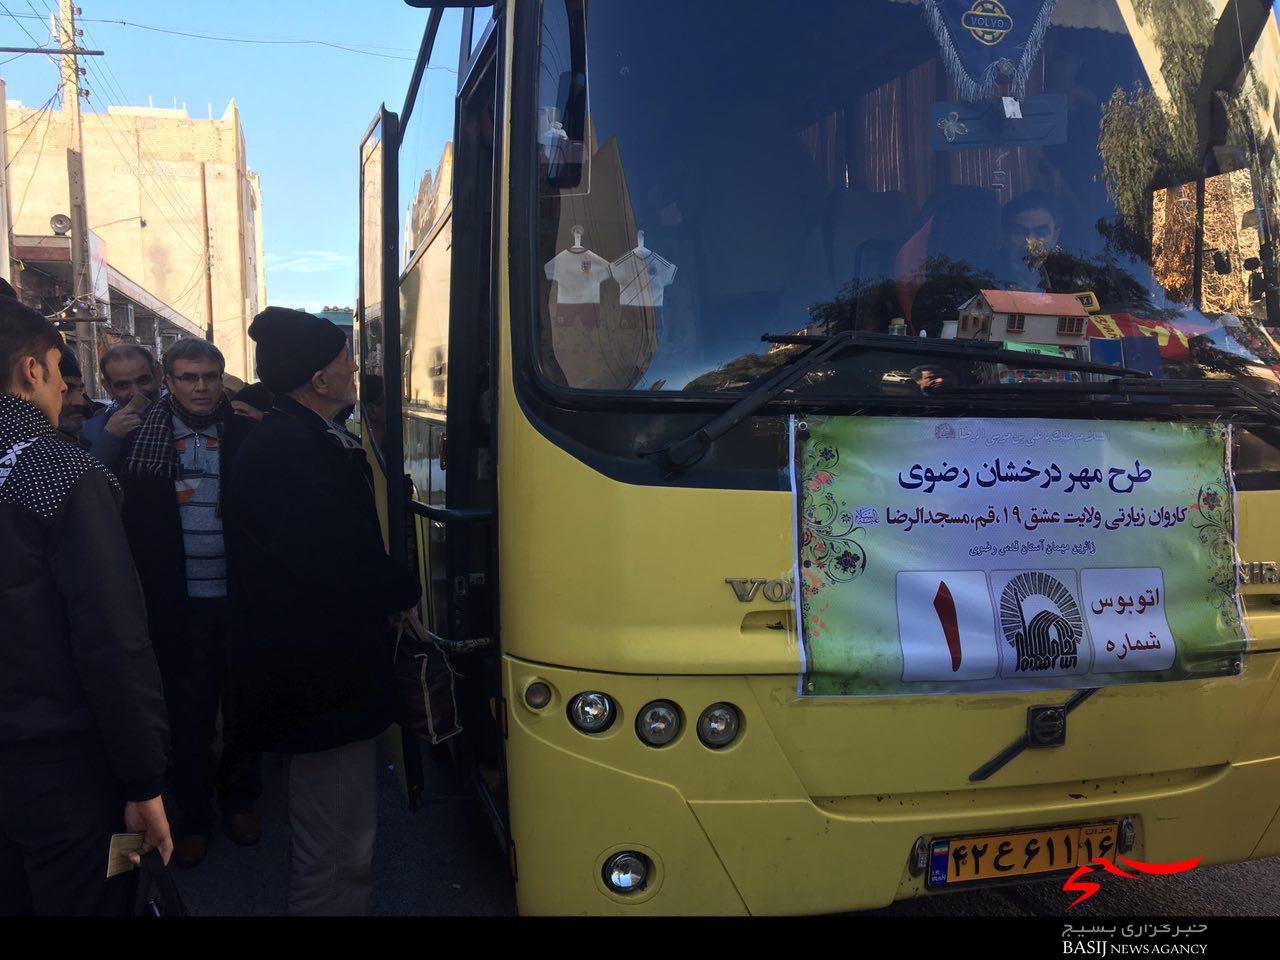 سه دستگاه اتوبوس از قم به زیارت مشهد الرضا(ع) اعزام شدند